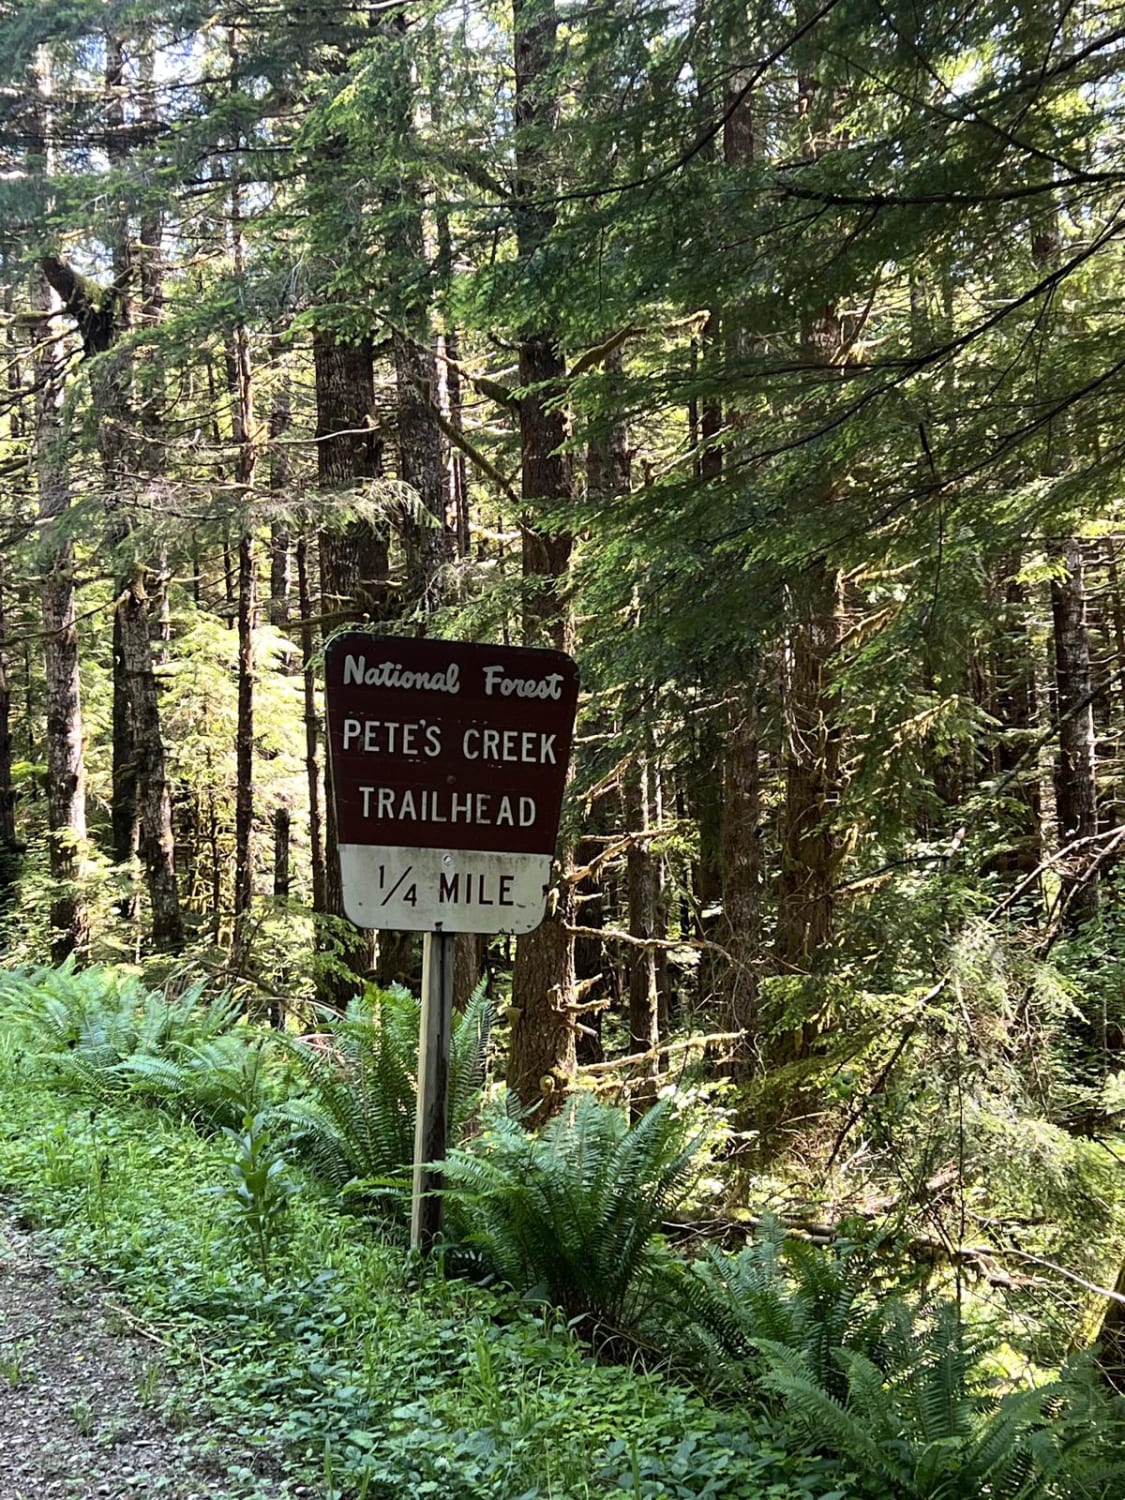 Pete's Creek Trail